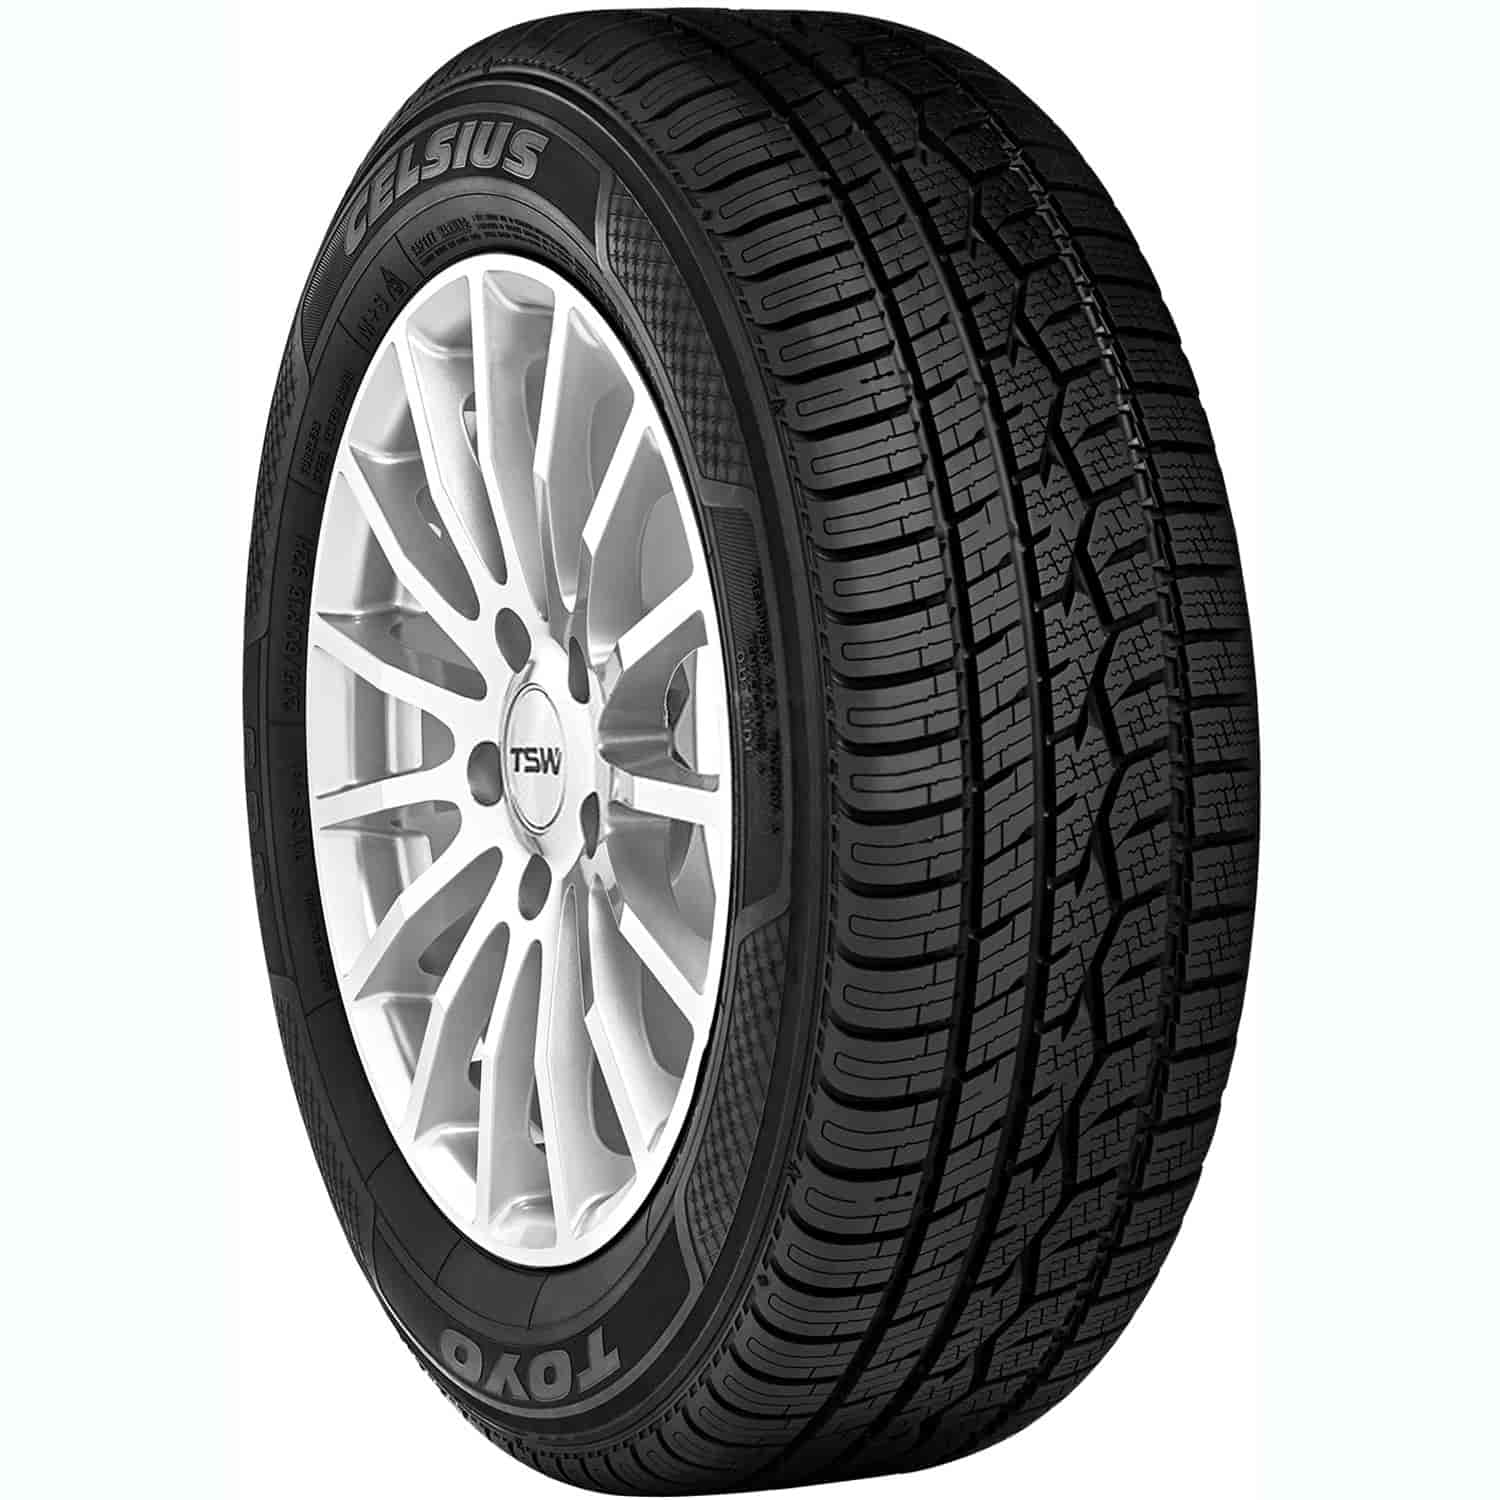 Celsius Passenger Car Tire 215/55R16